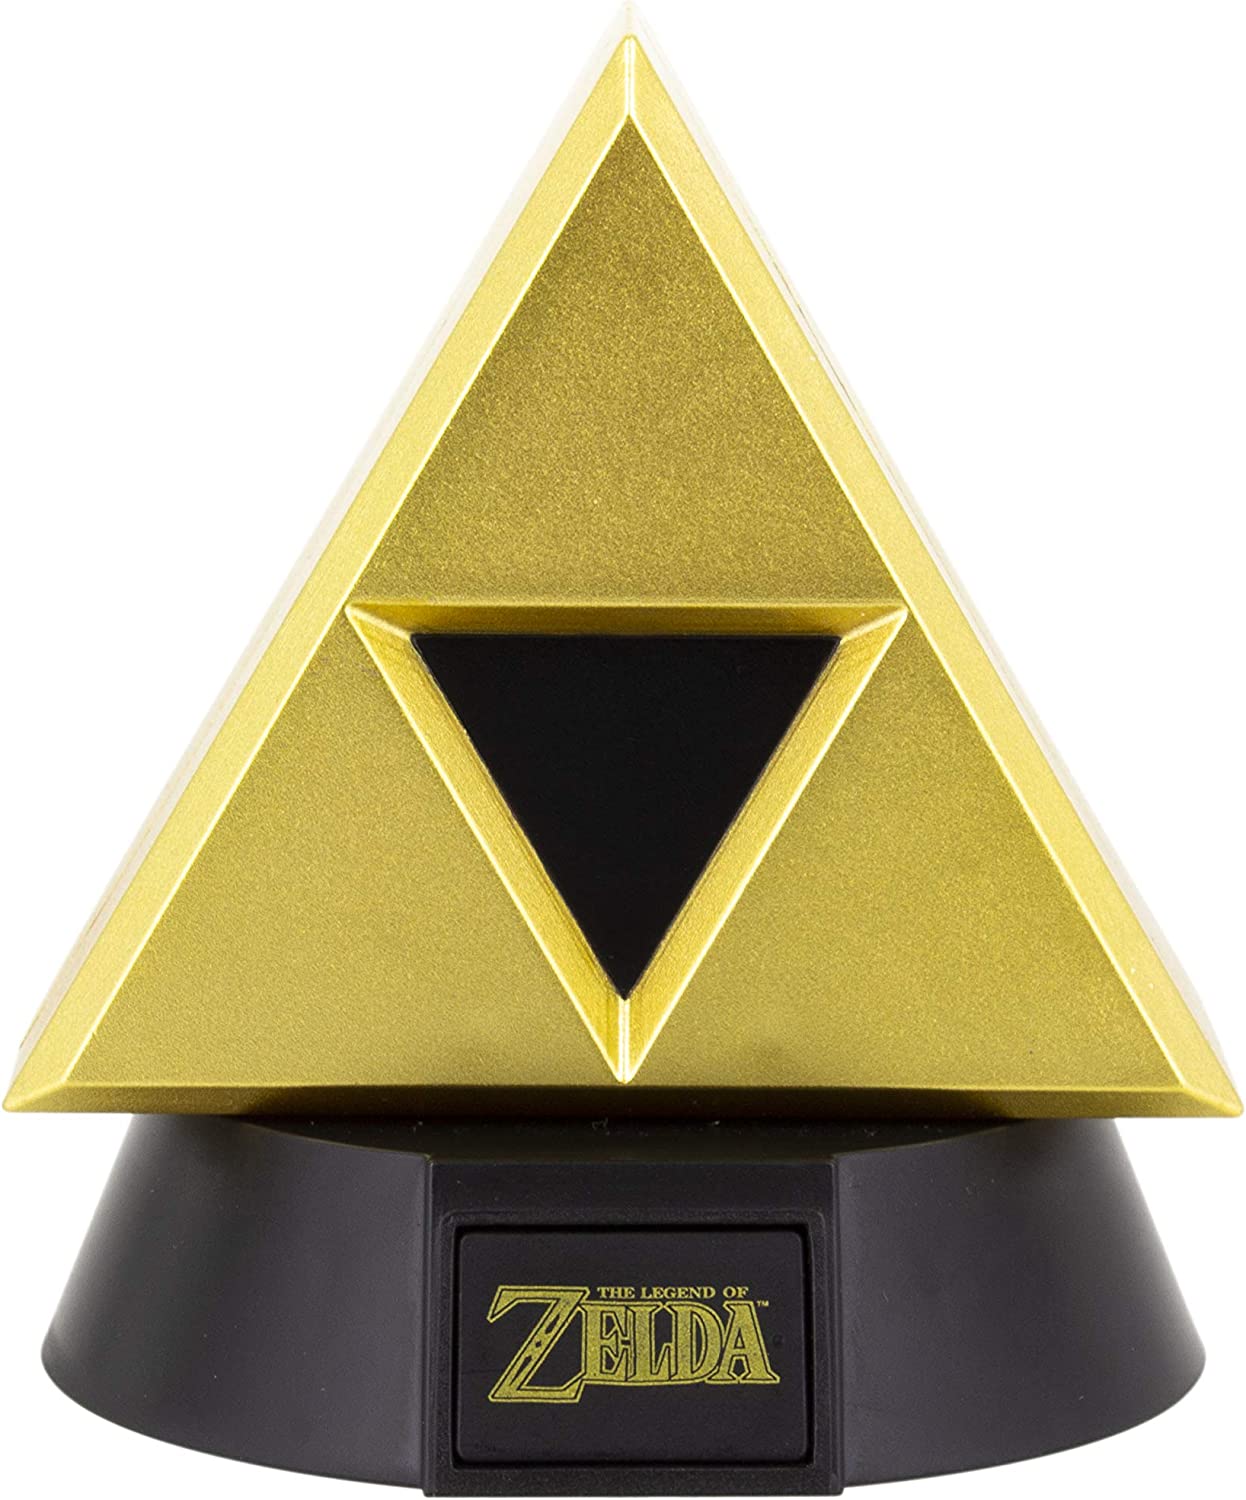 https://onlycoolstuff.co.uk/wp-content/uploads/2023/01/Gold-Triforce-Desk-Light-Legend-Of-Zelda-Official-Merch-1.jpg